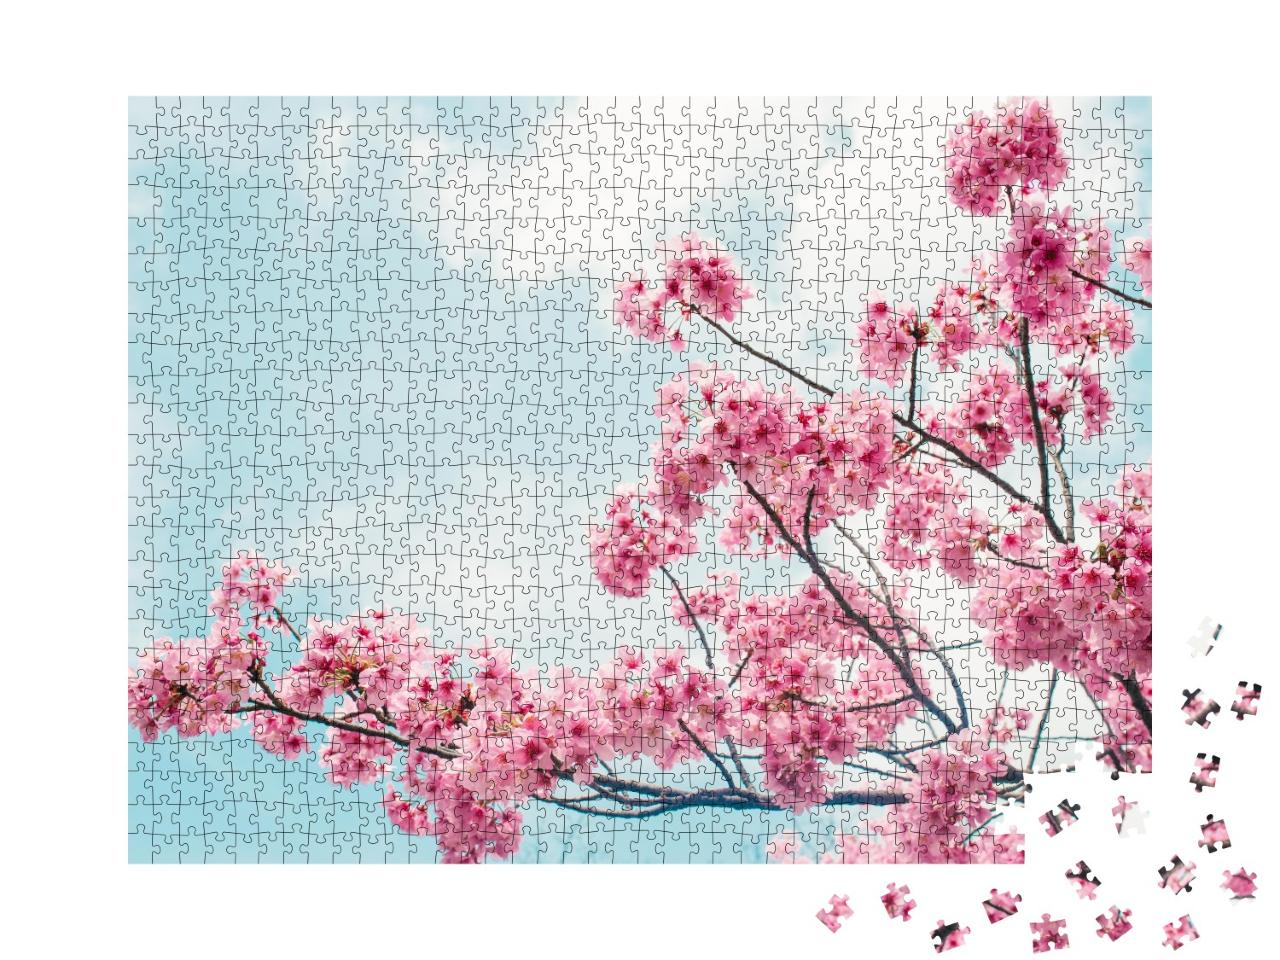 Puzzle de 1000 pièces « De charmantes branches de cerisier en fleurs sous un ciel bleu »